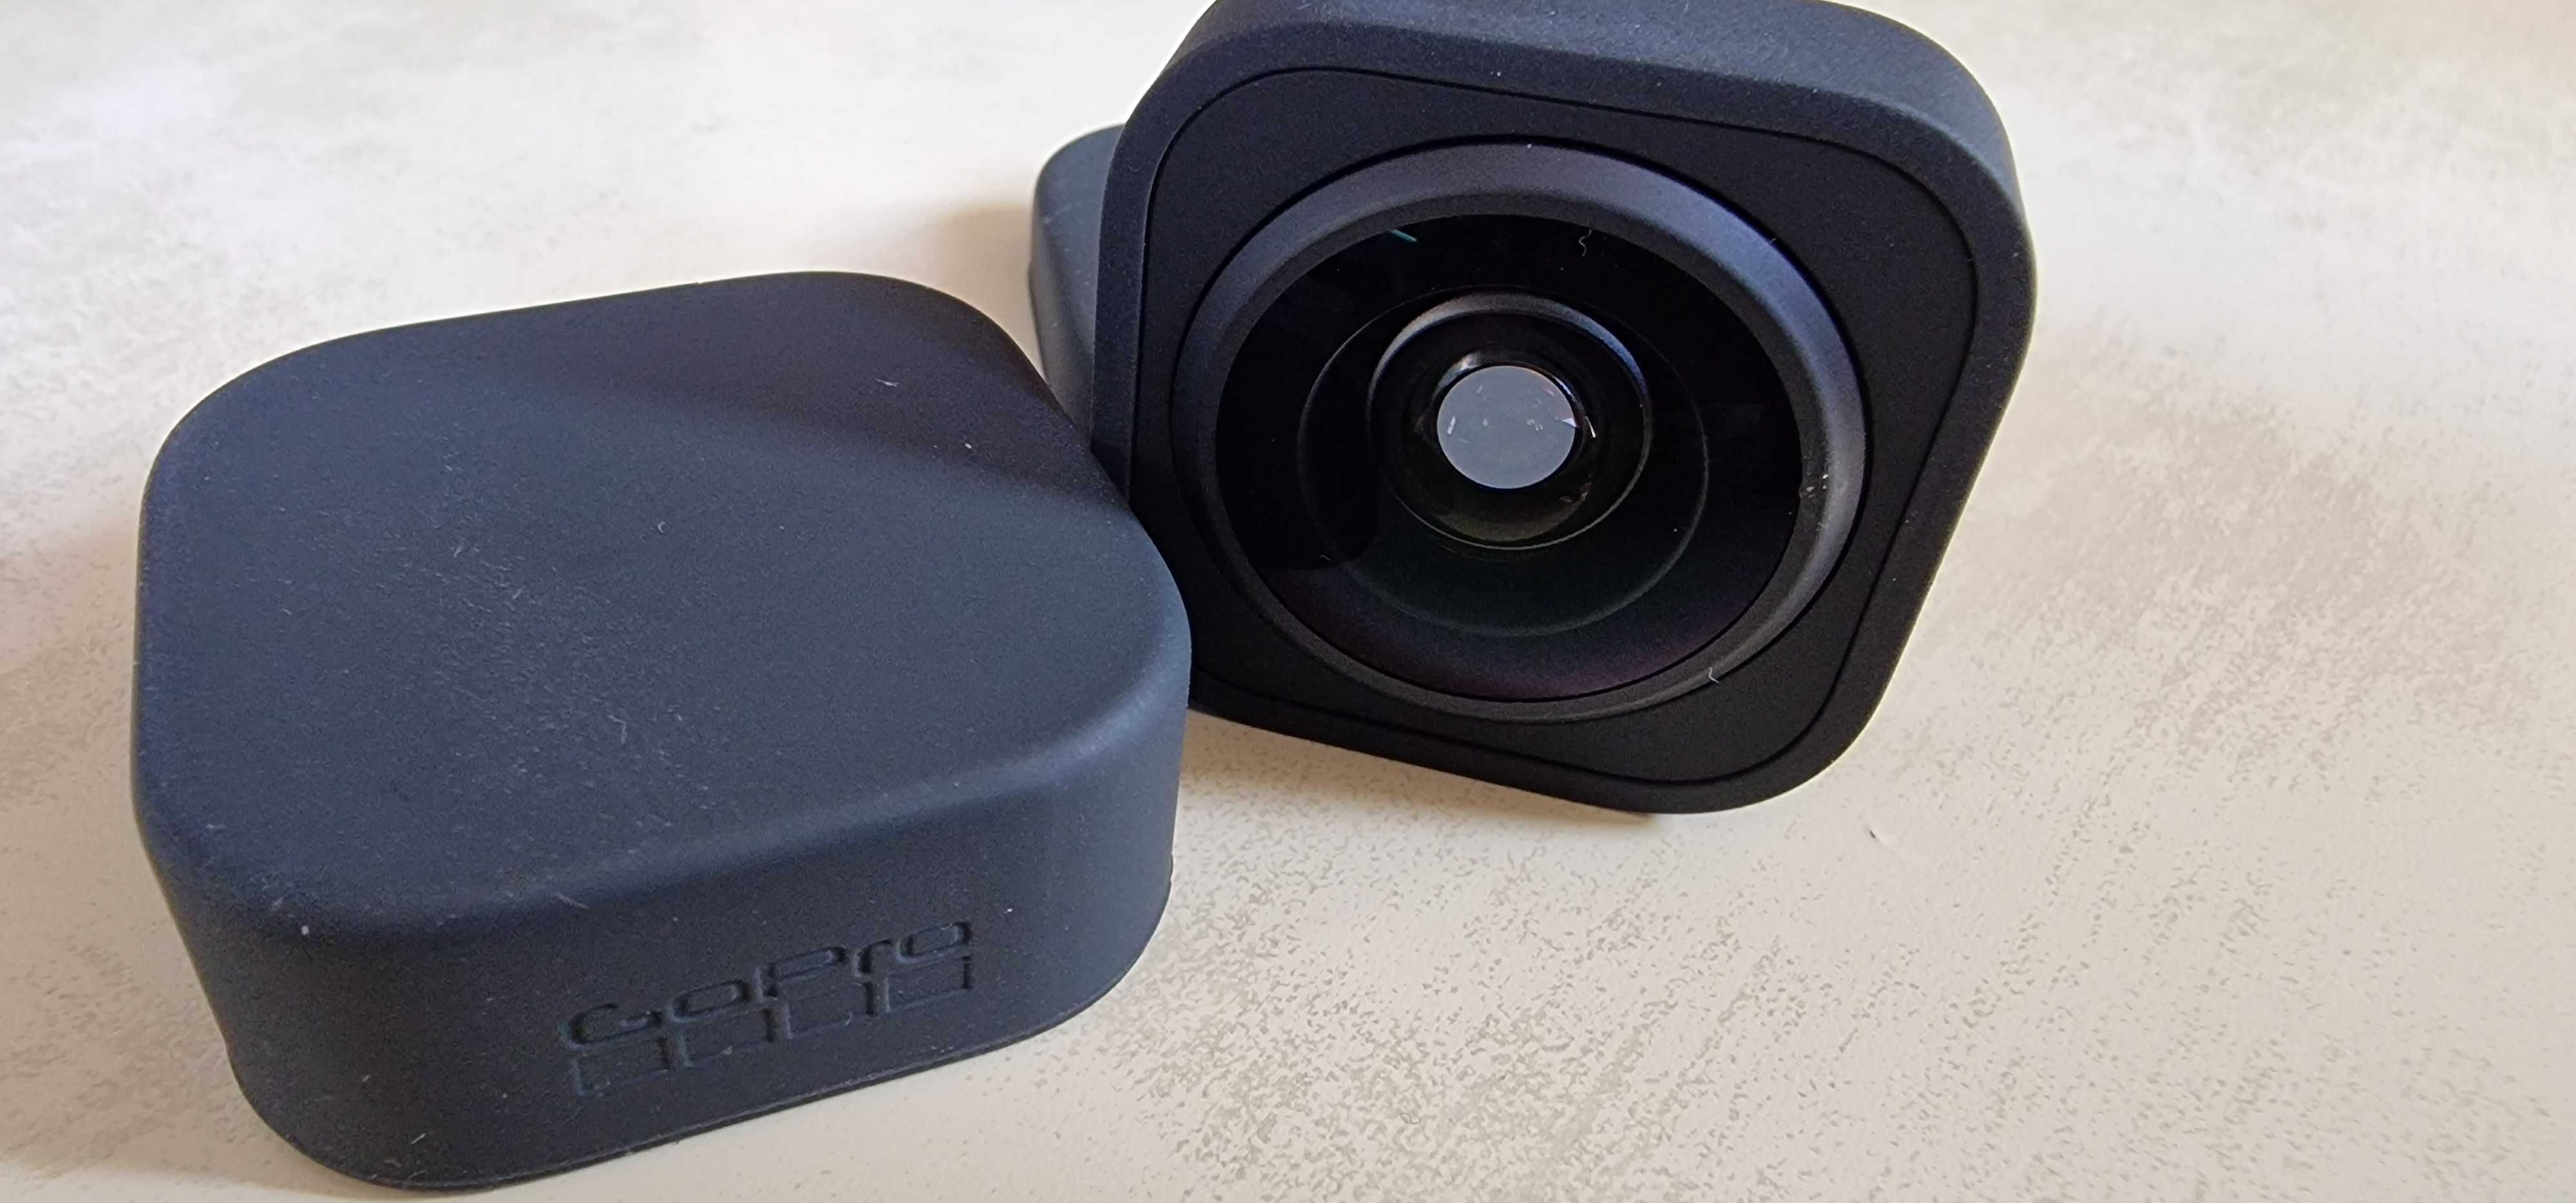 Оригинален Max Lens Mod  за GoPro камери